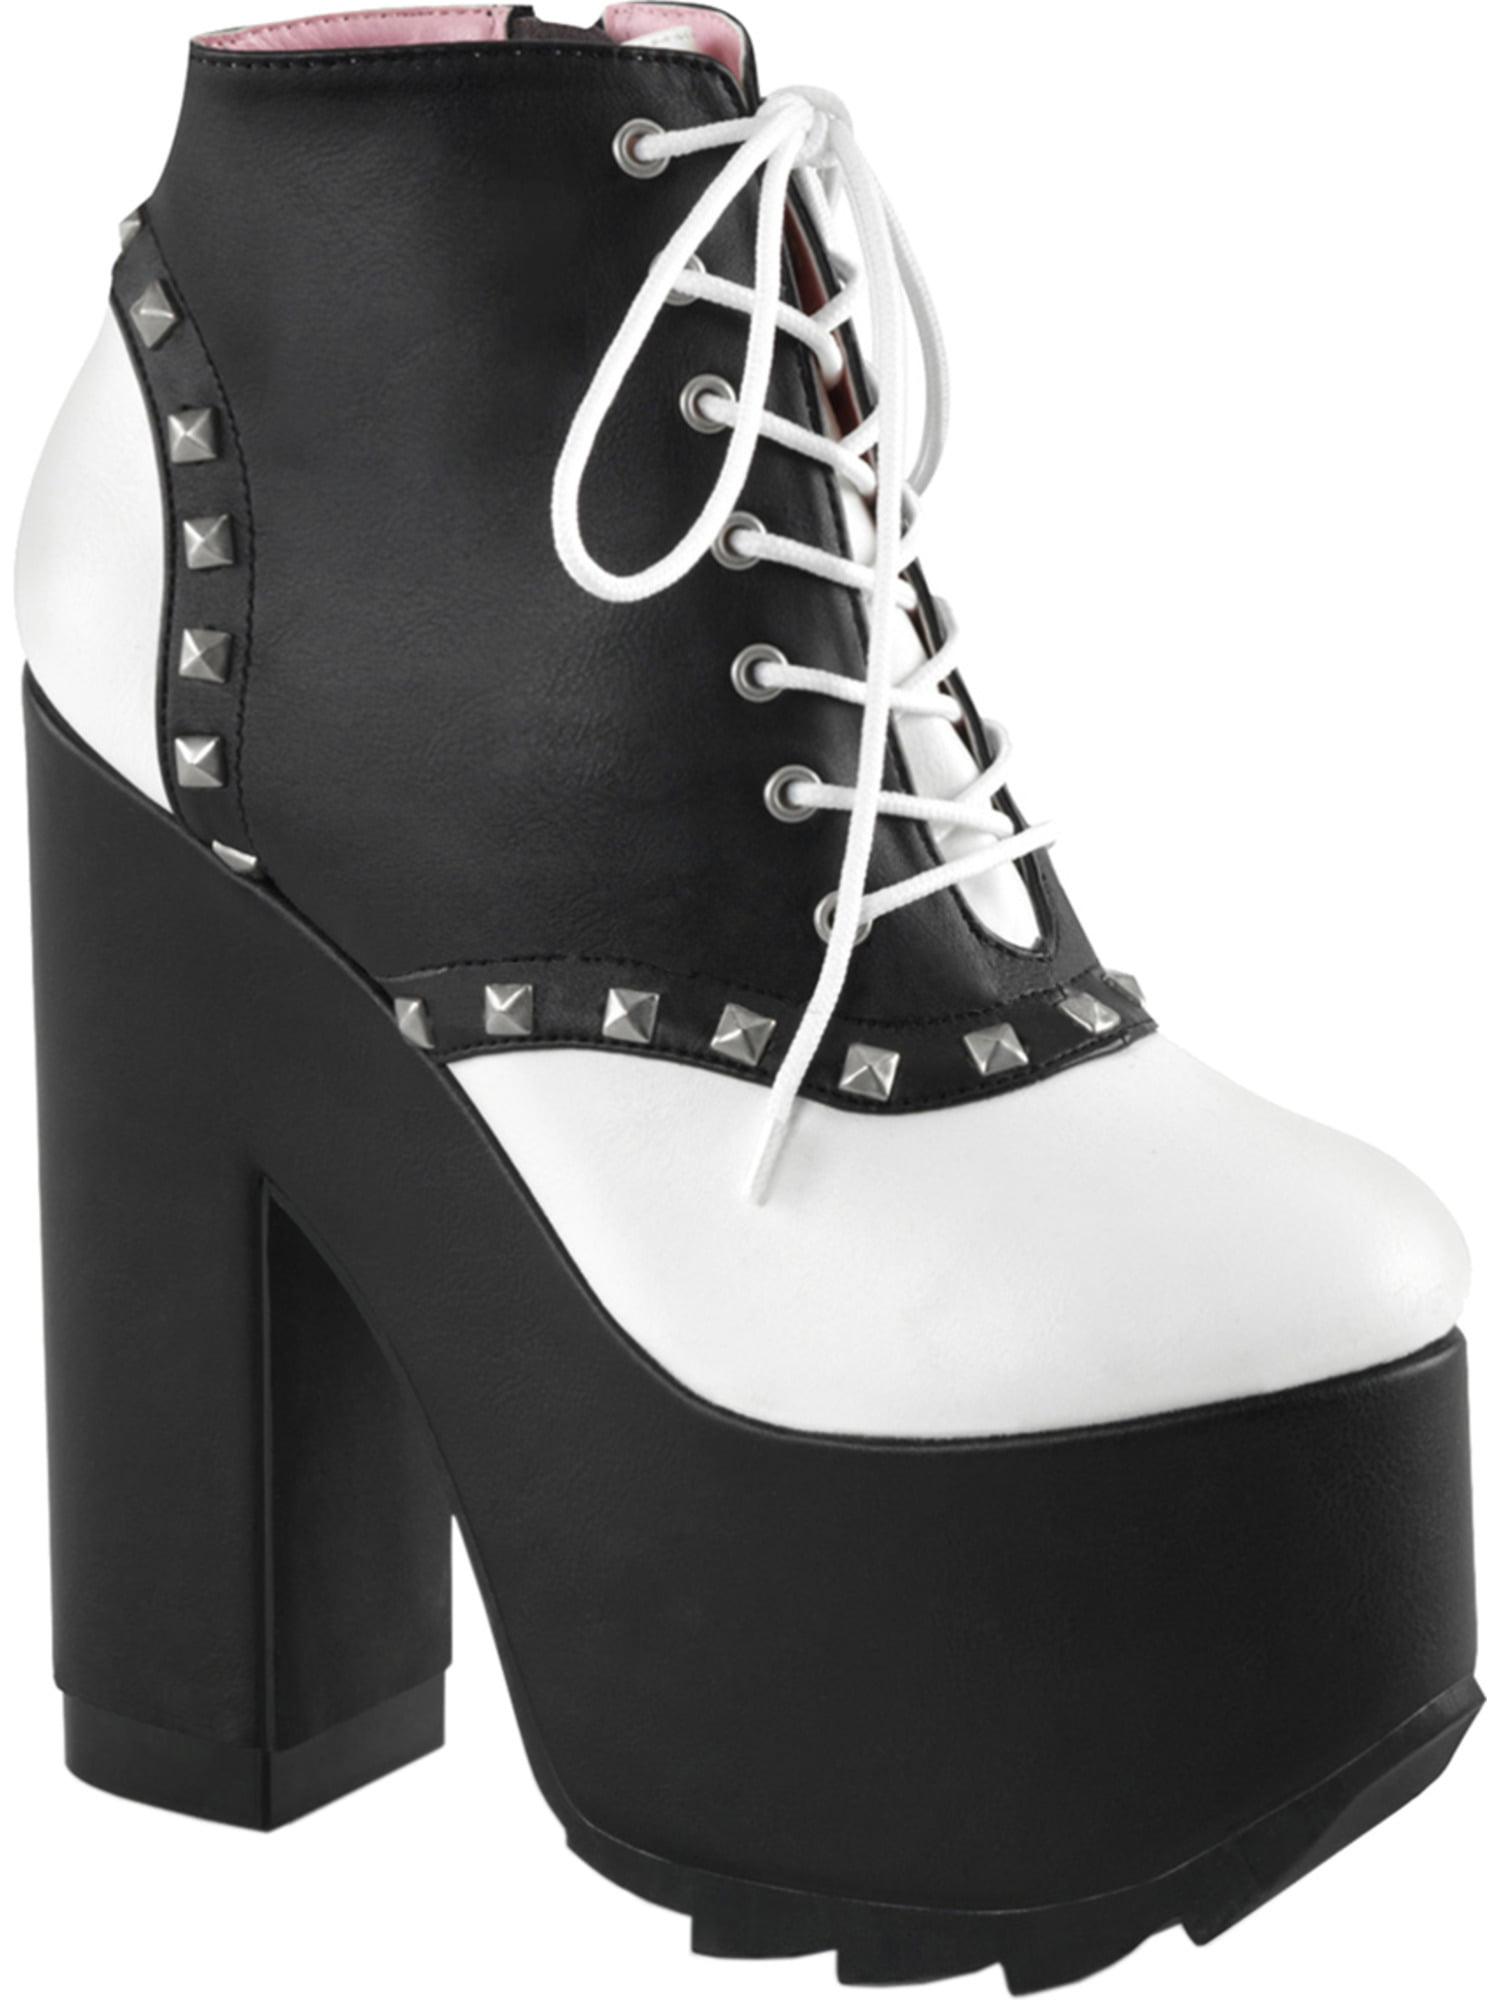 black booties 4 inch heel